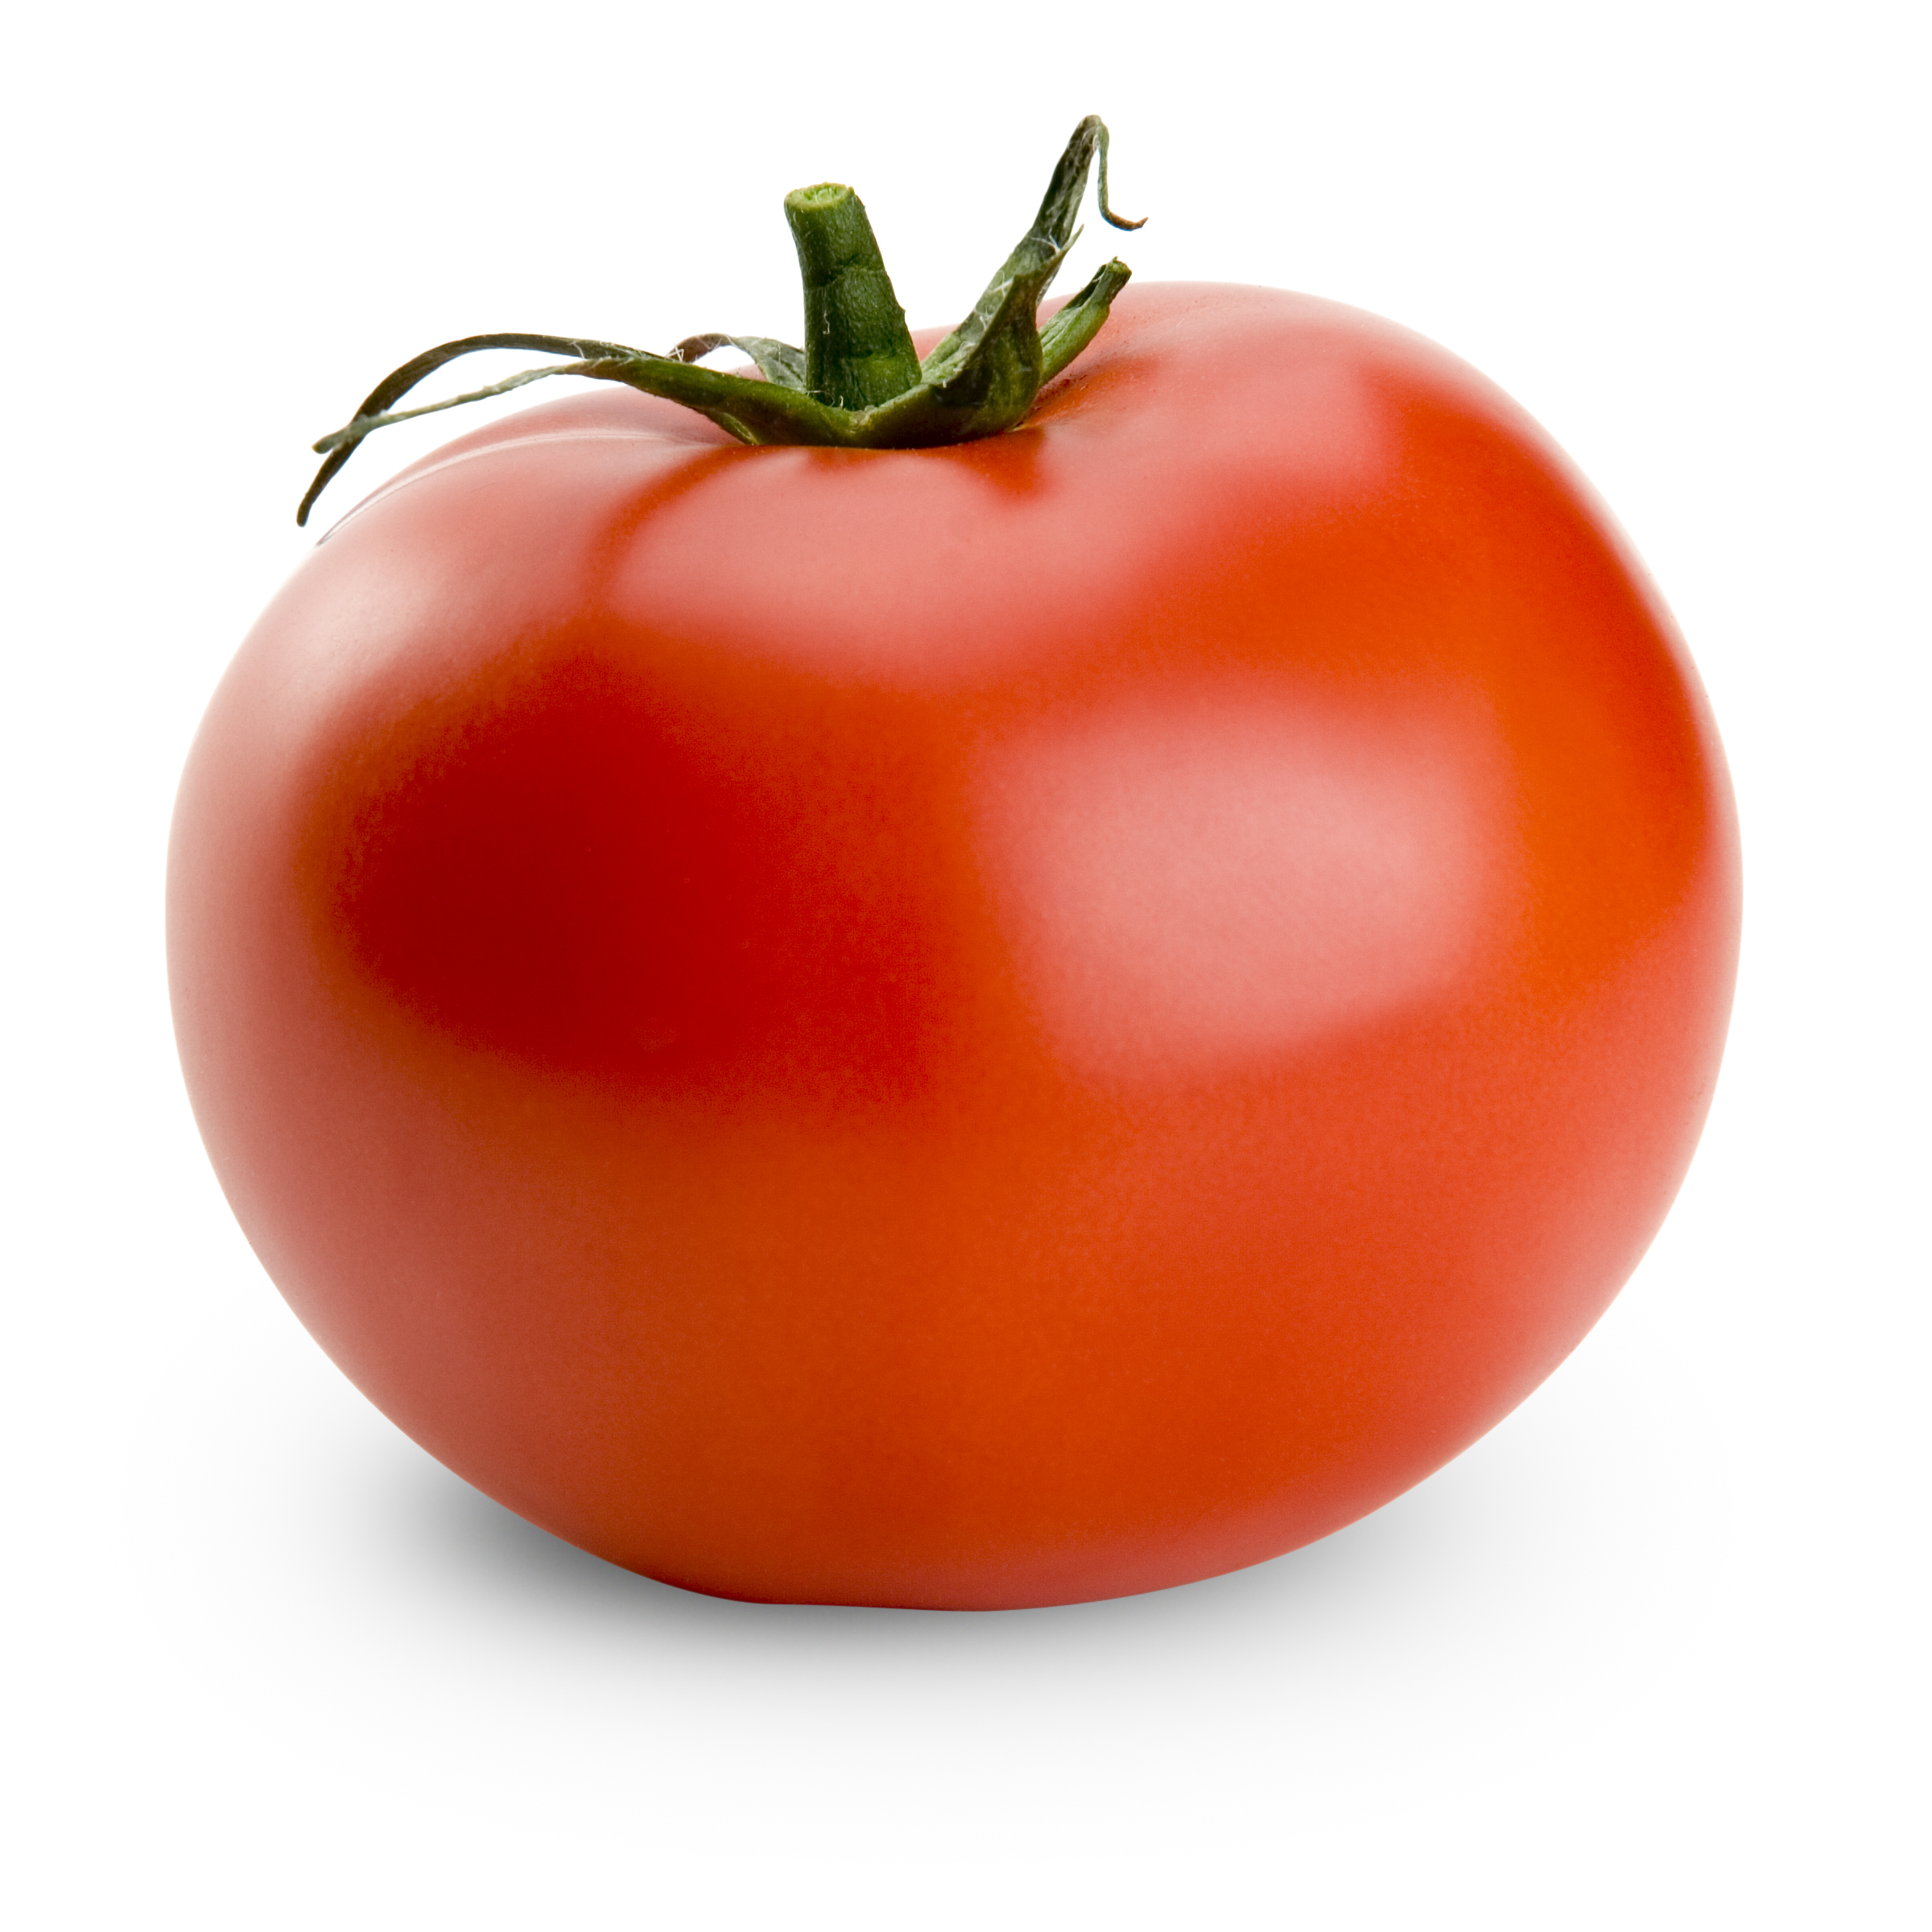 Tomato #19